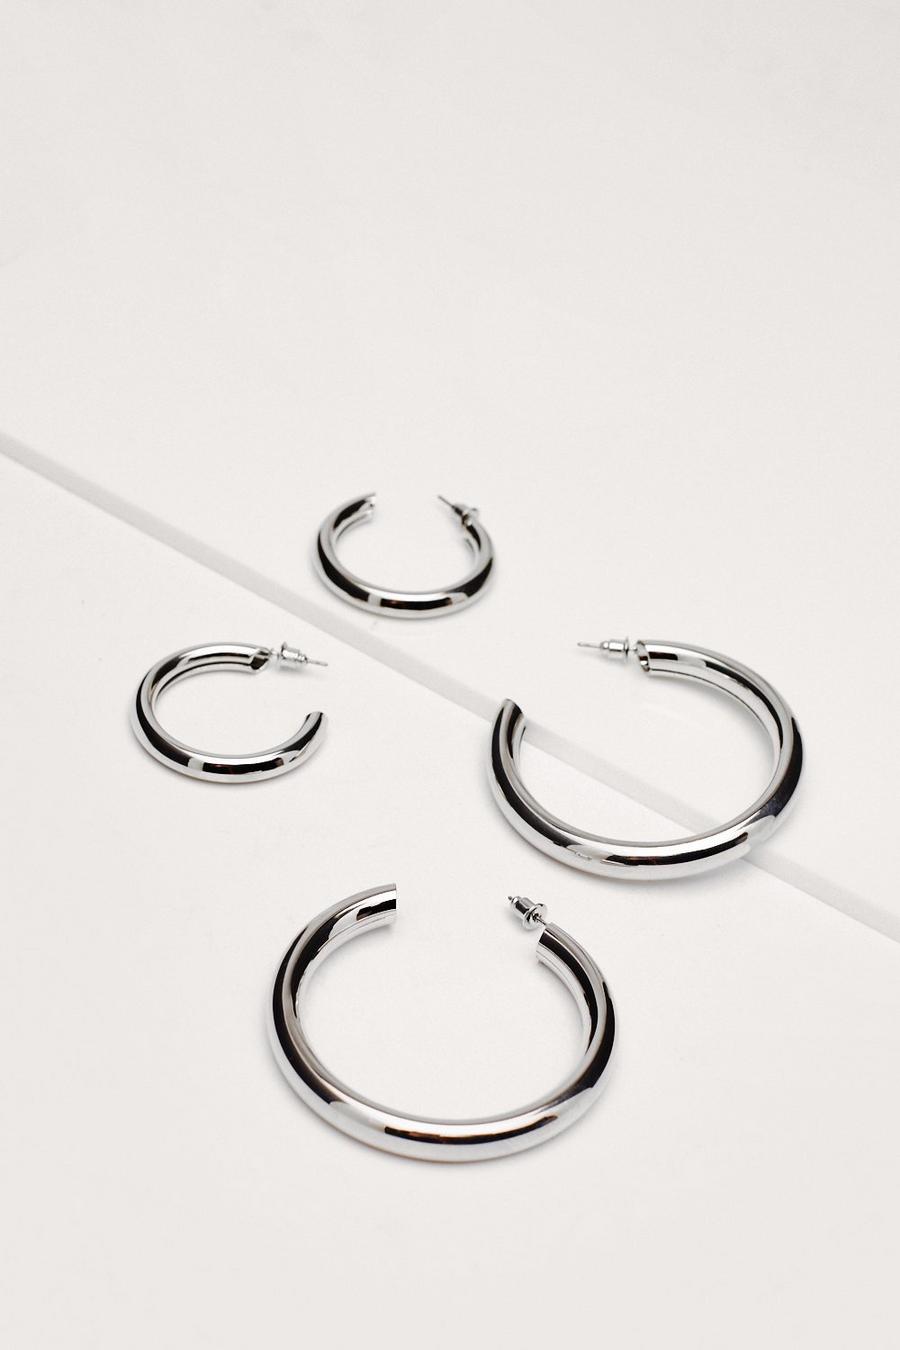 Recycled Metal 2 Pc Hoop Earrings Set